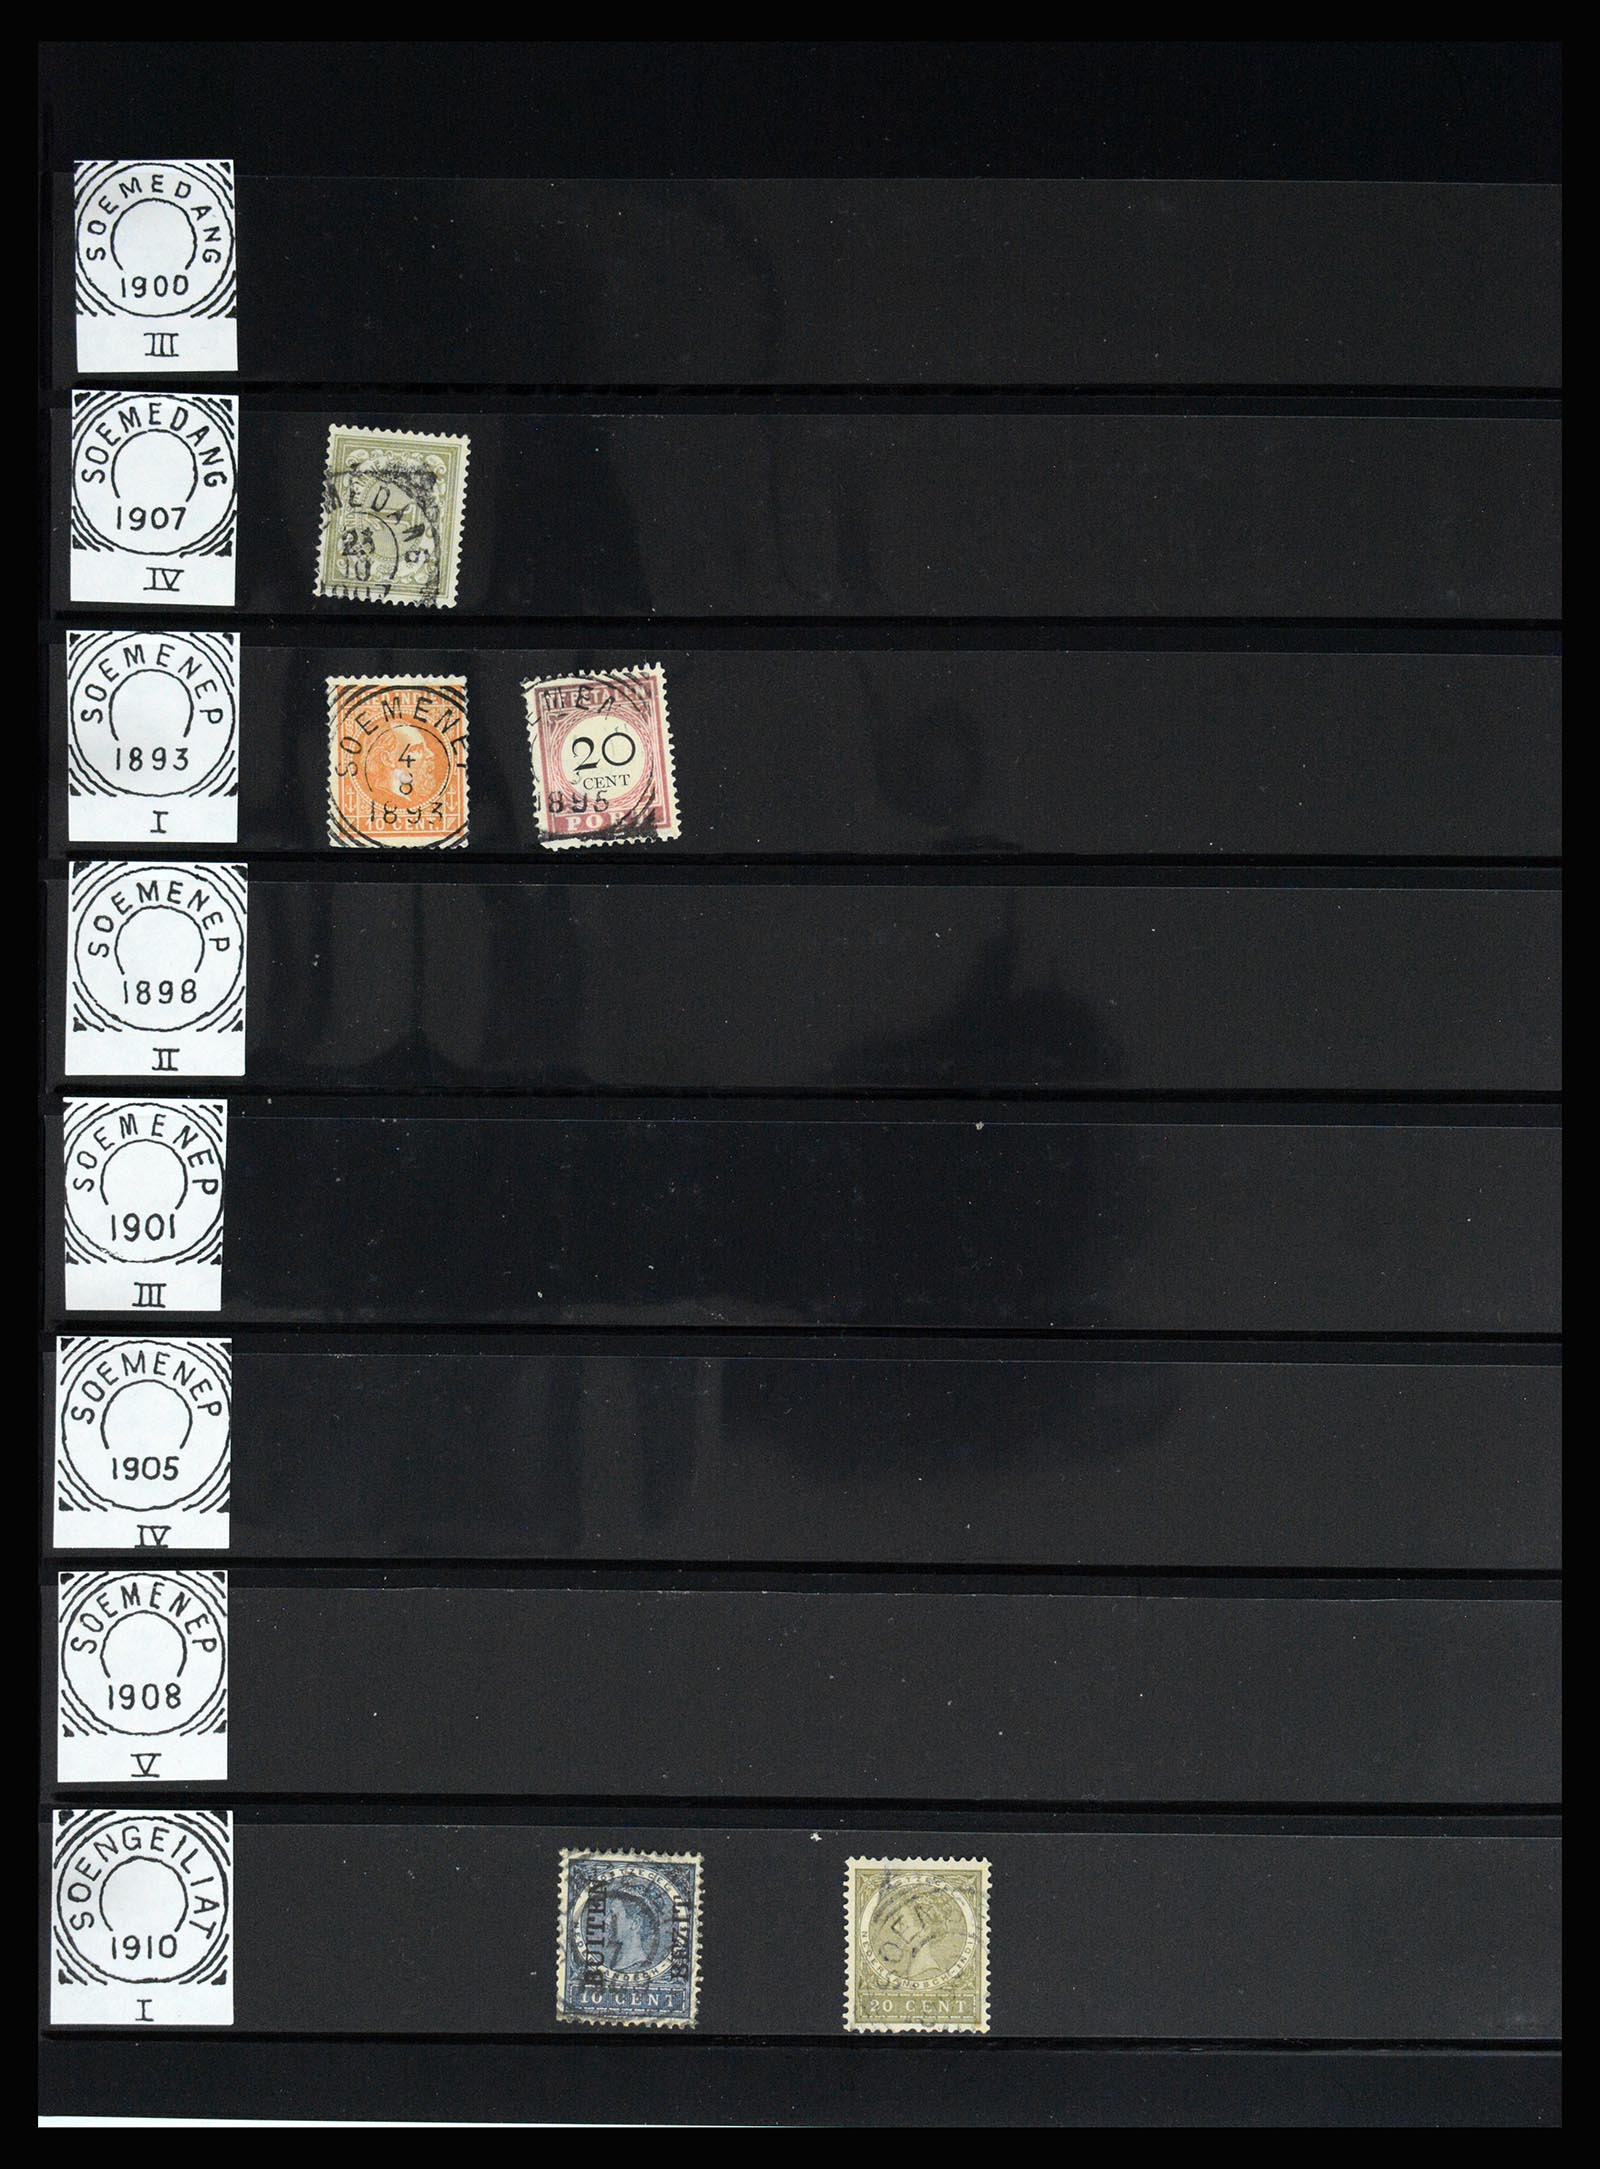 36512 150 - Stamp collection 36512 Nederlands Indië stempels 1872-1930.